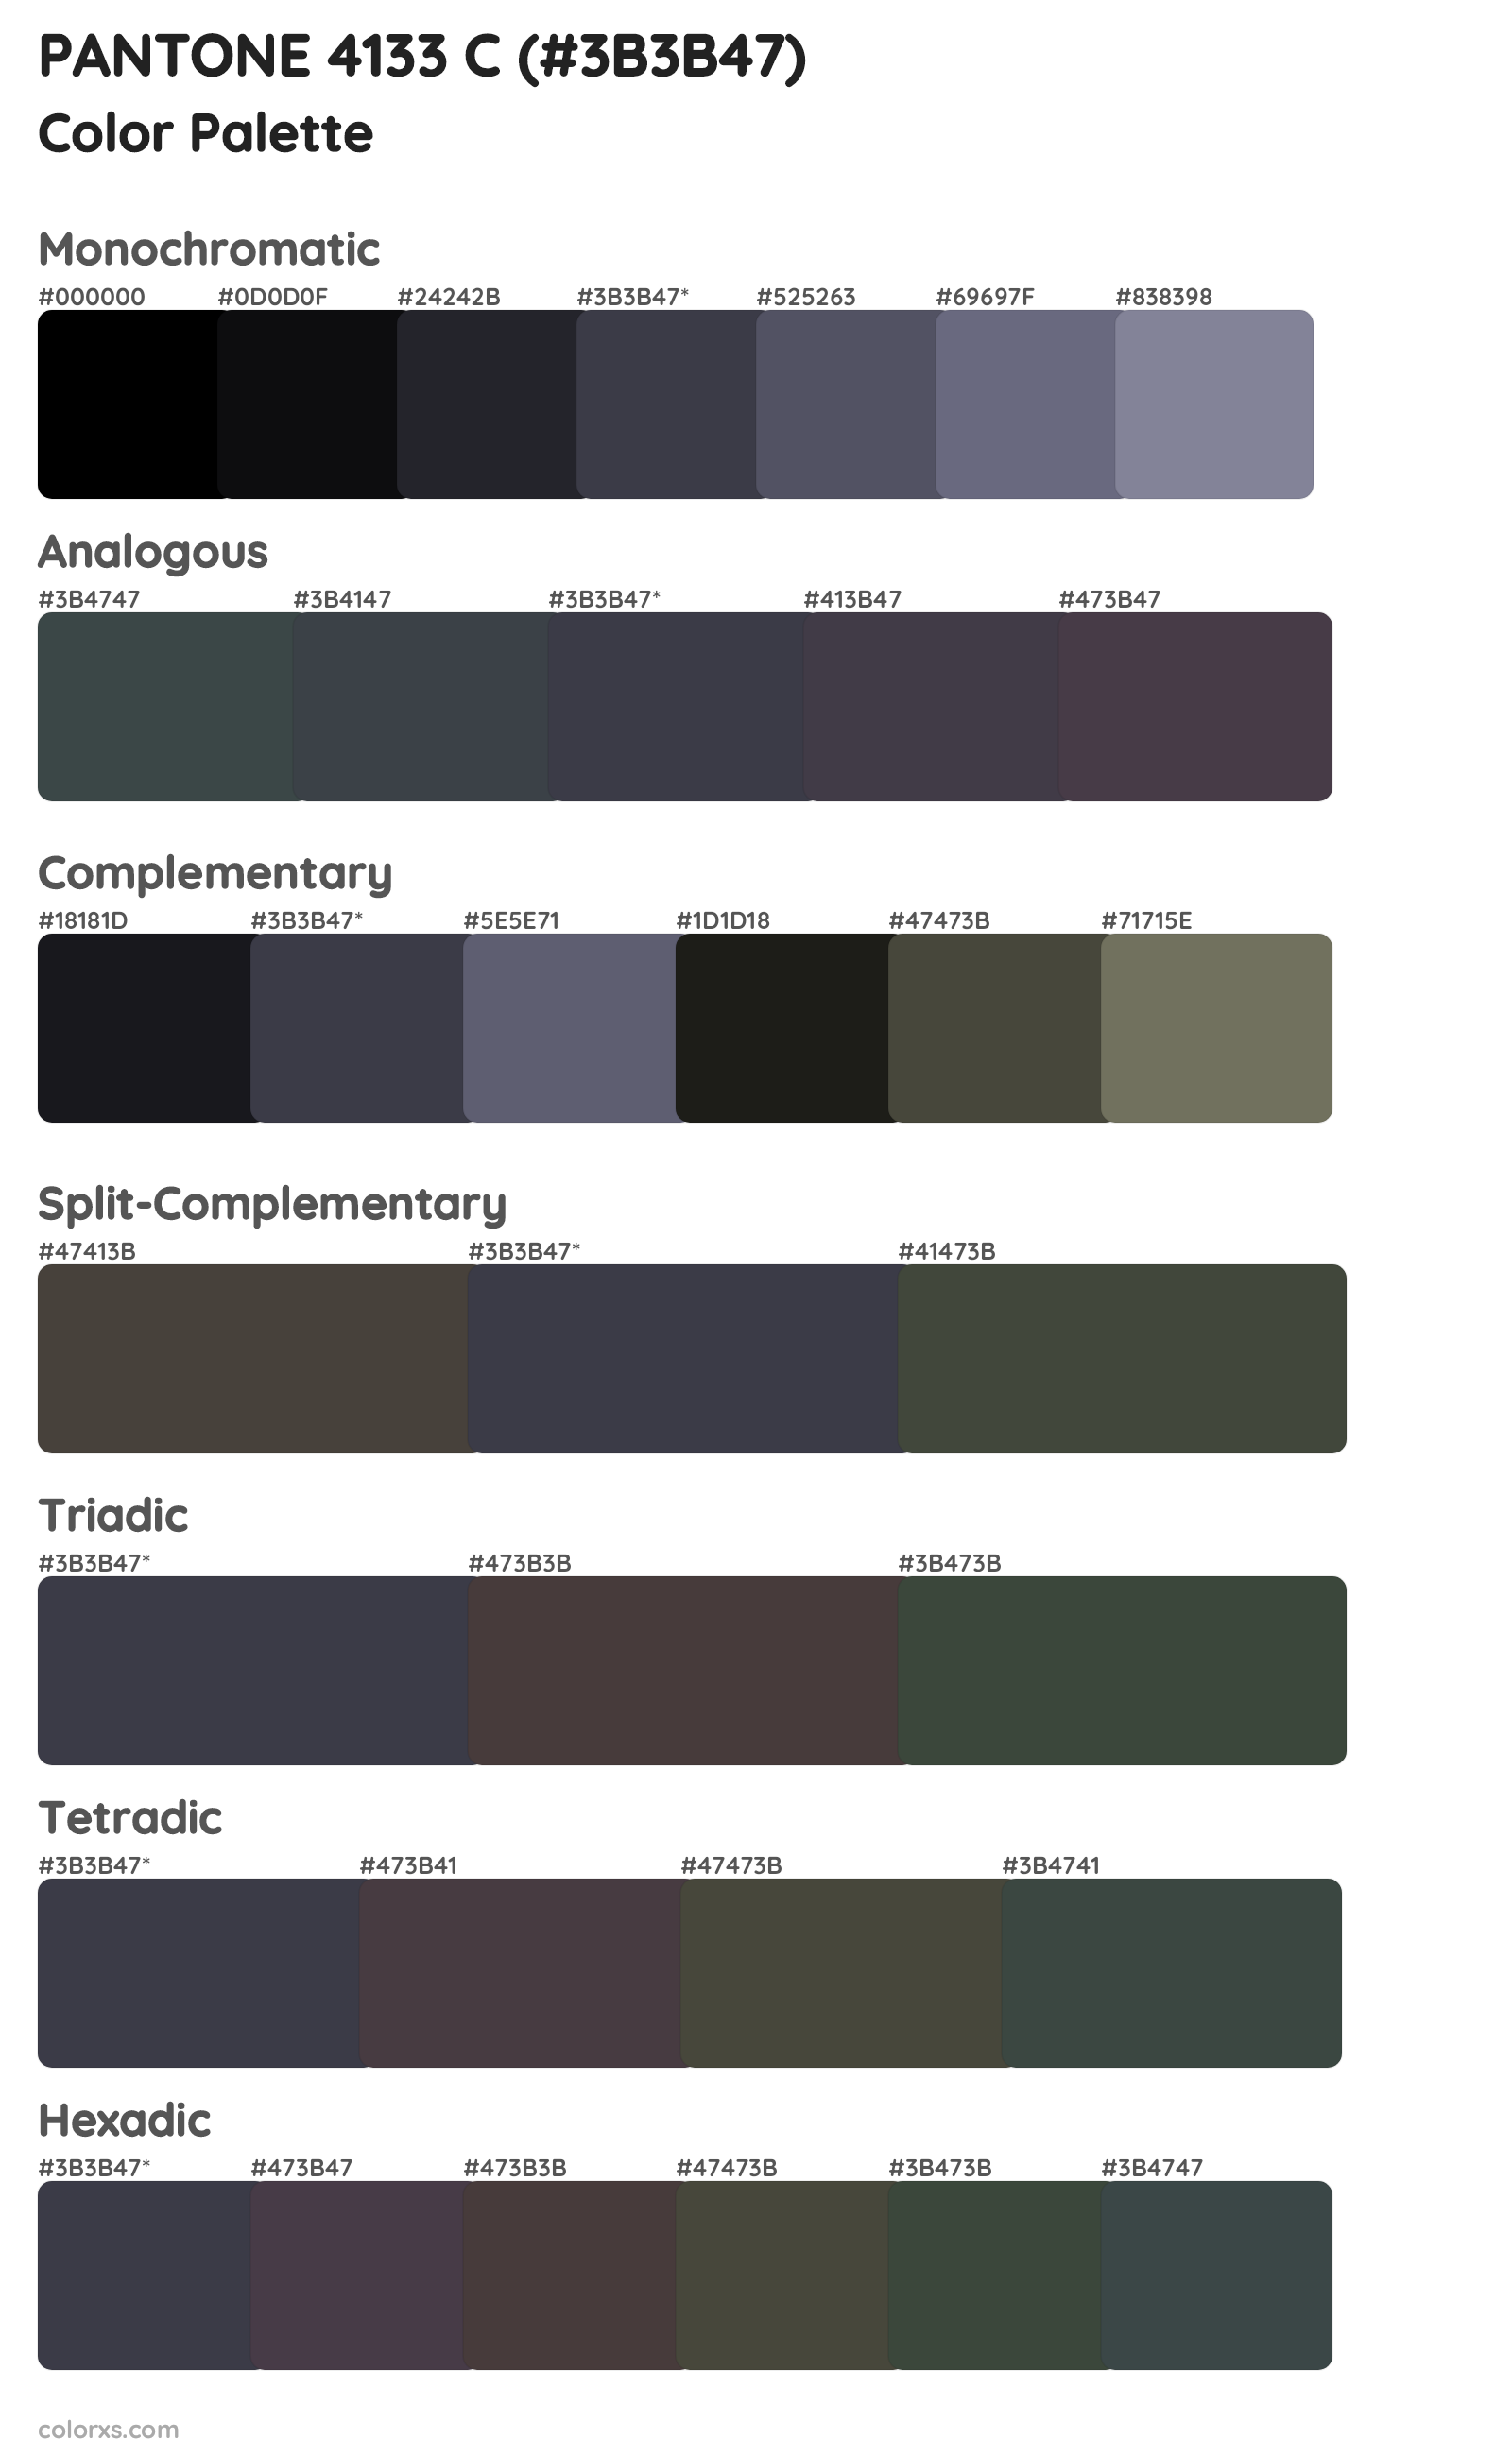 PANTONE 4133 C Color Scheme Palettes